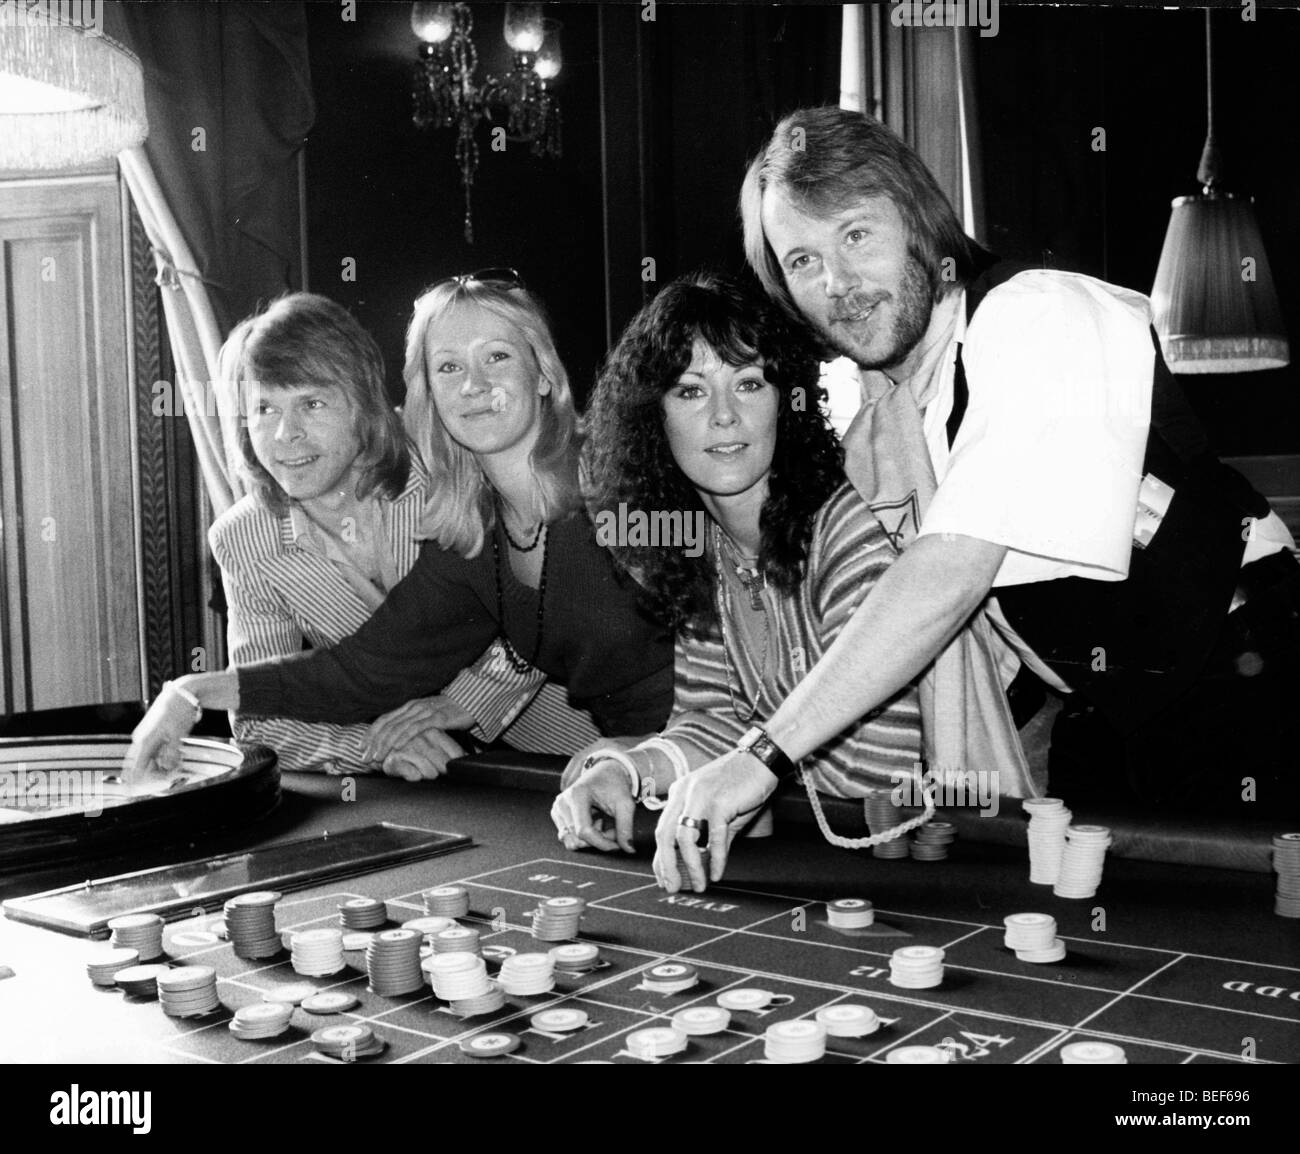 ABBA giocare alla roulette nel tardo-1970's (L-R) Björn Ulvaeus, Agnetha Fältskog, Anni-Frid Lyngstad (Frida), e Benny Andersson Foto Stock